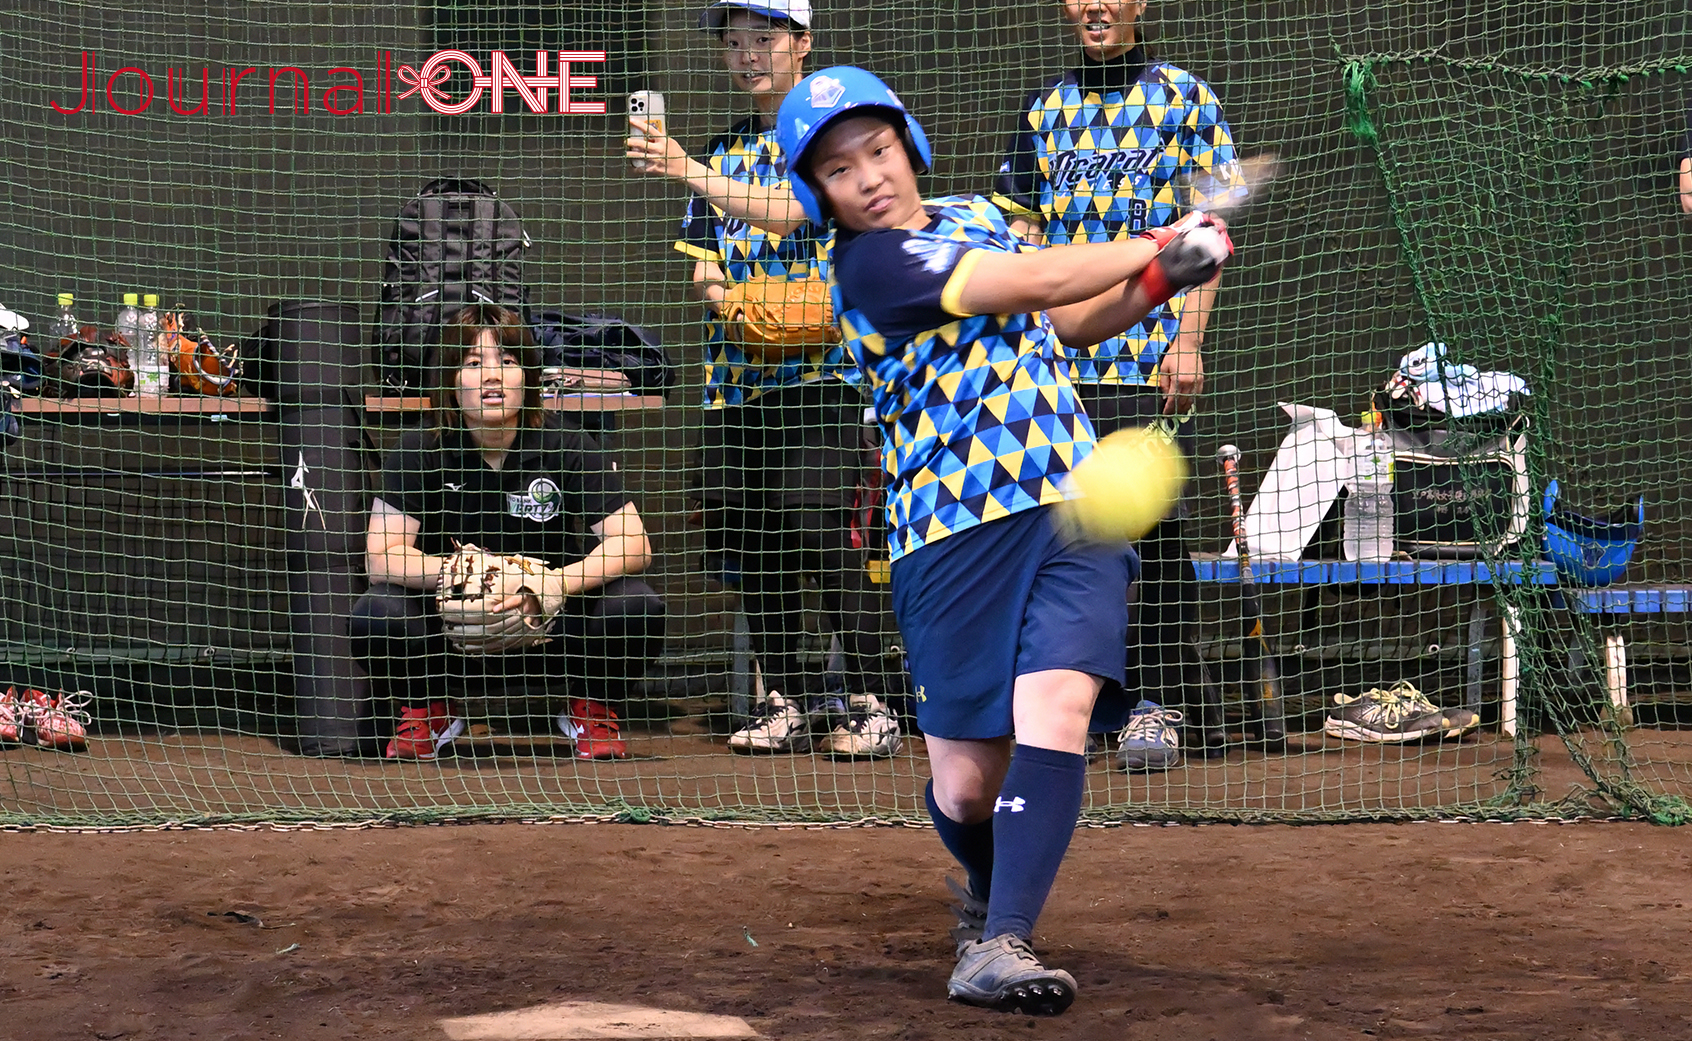 【四国を元気に!】女子ソフト・伊予銀行VERTZとの交流でソフトボールを打つ、高知の女子硬式野球・テンカラット エクスプレスの北村 奈緒外野手-Journal-ONE撮影